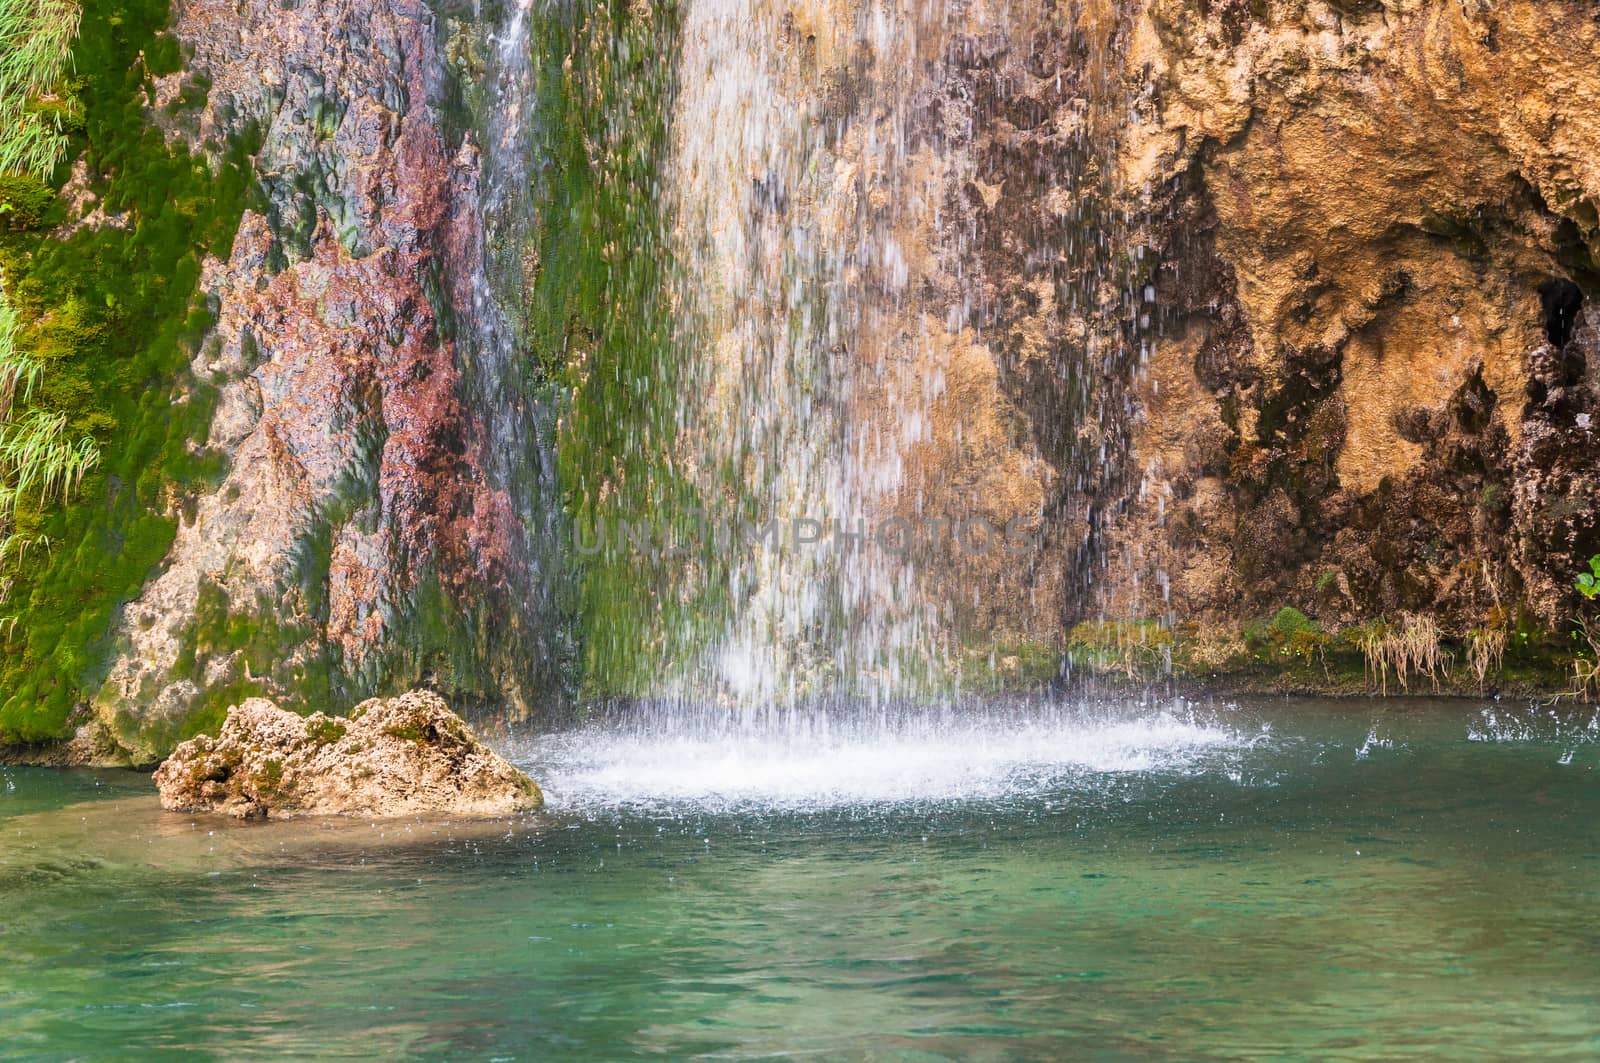 Splashing waterfall by mkos83